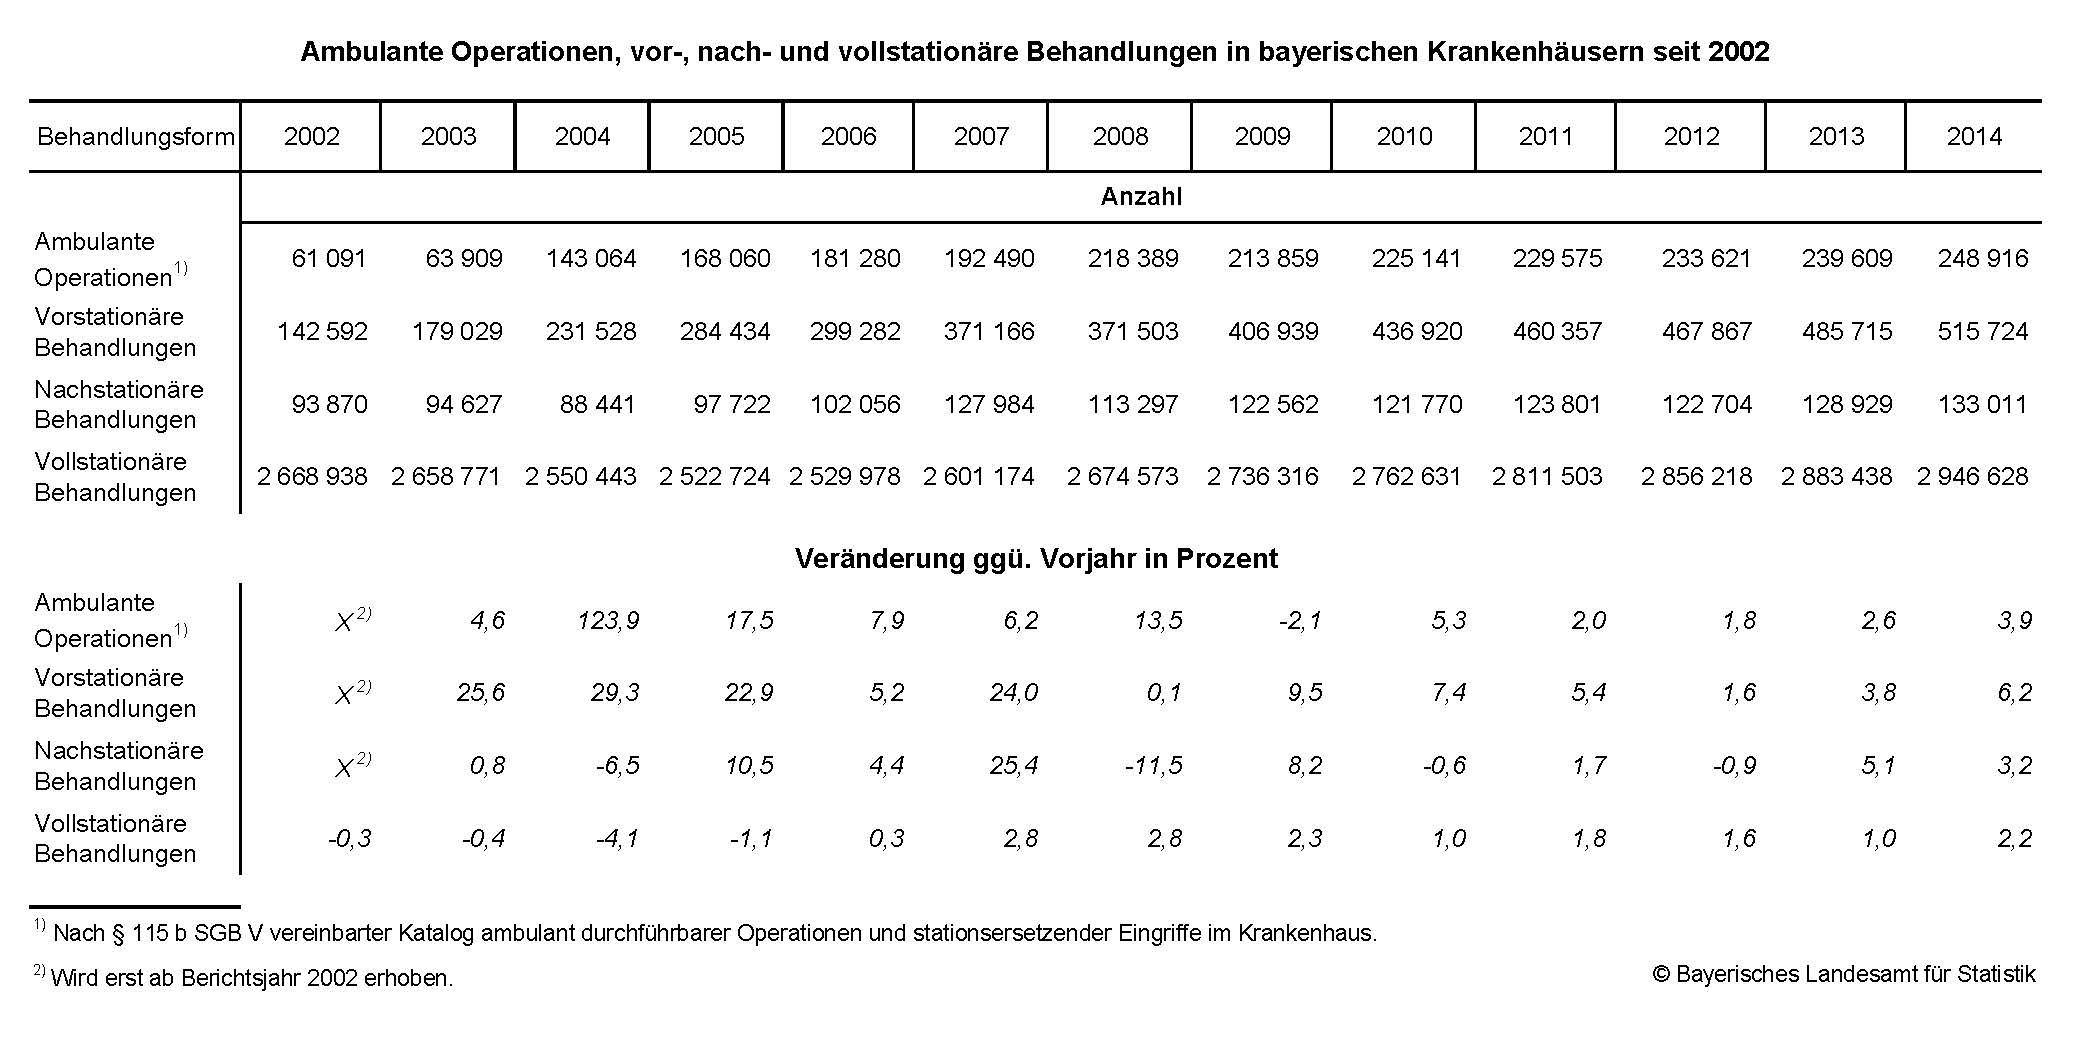 Ambulante Operationen, vor-, nach- und vollstationäre Behandlungen in bayerischen Krankenhäusern seit 2002